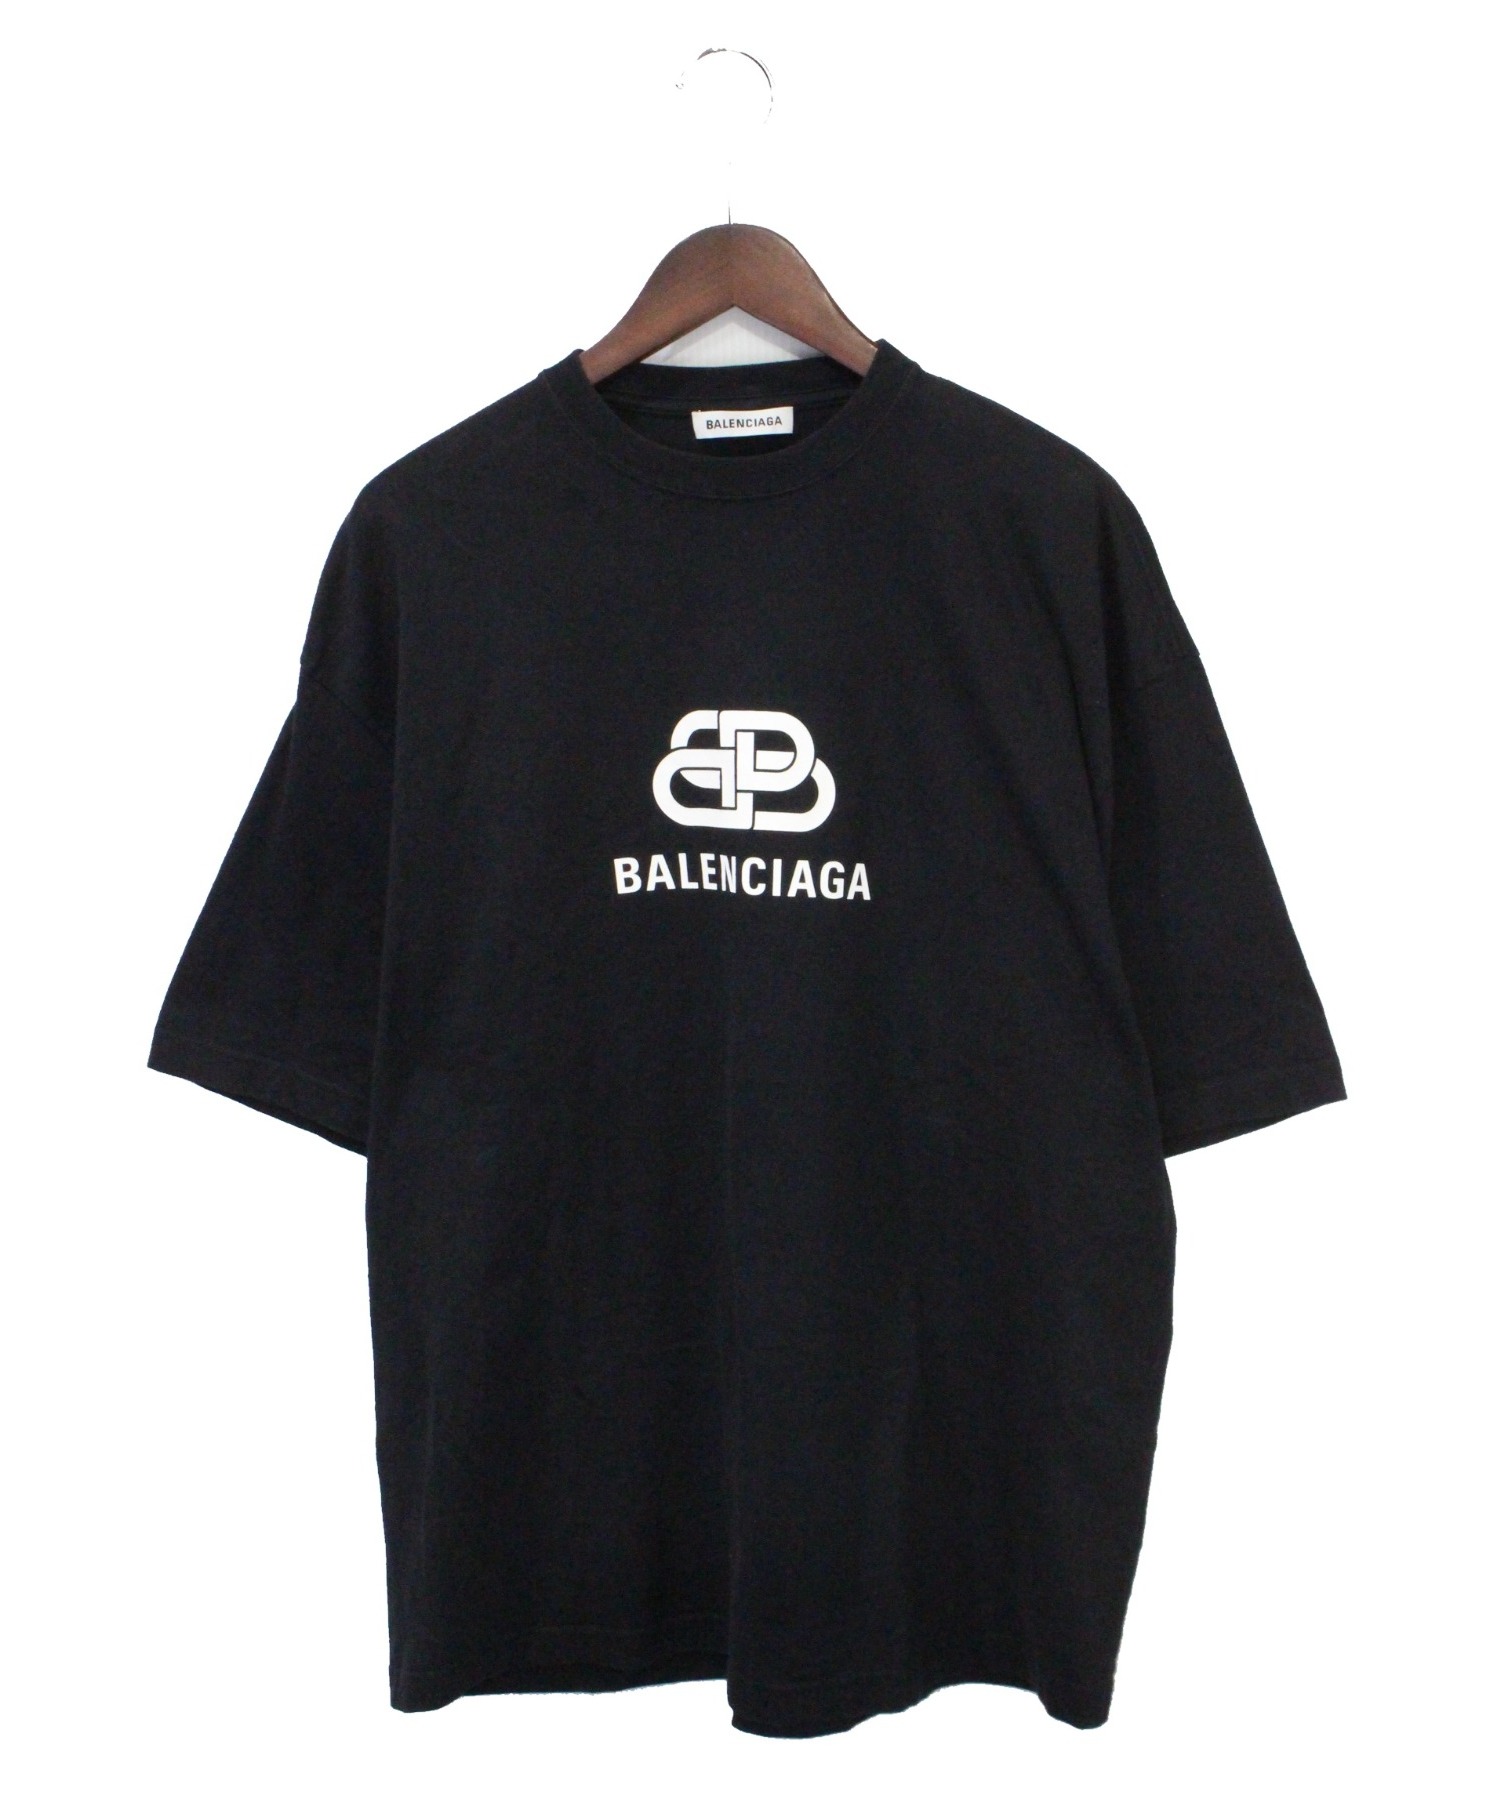 希少 人気デザイン BALENCIAGA BBロゴ Tシャツ オーバーサイズ 黒カラーブラック黒